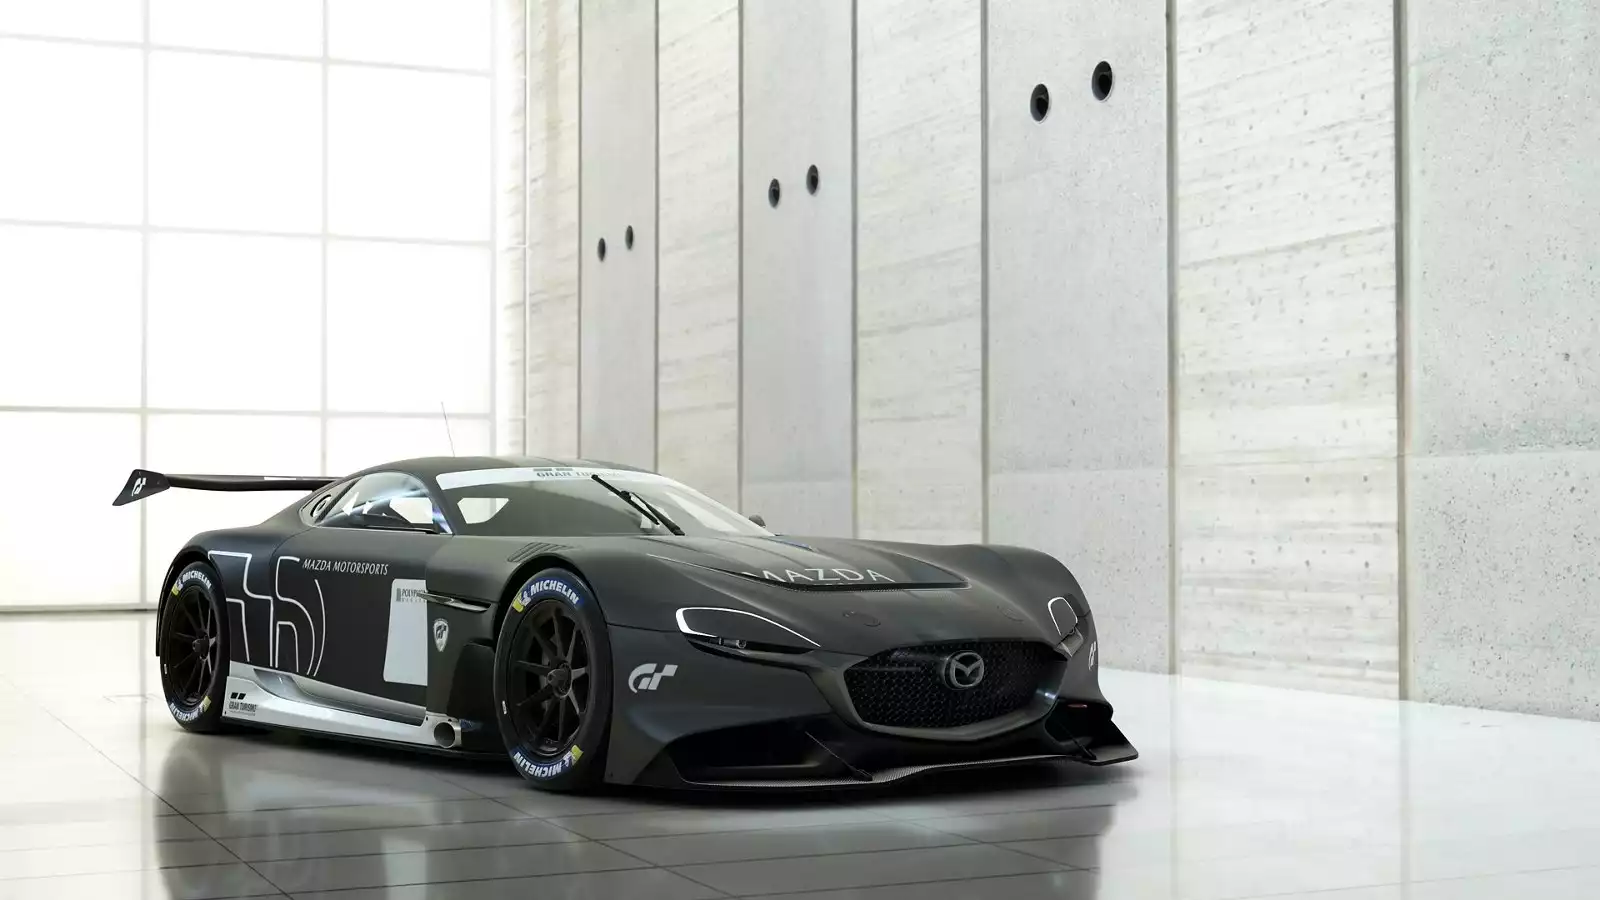 Gran Turismo 7 adds S14 Silvia, Porsche and VW concepts